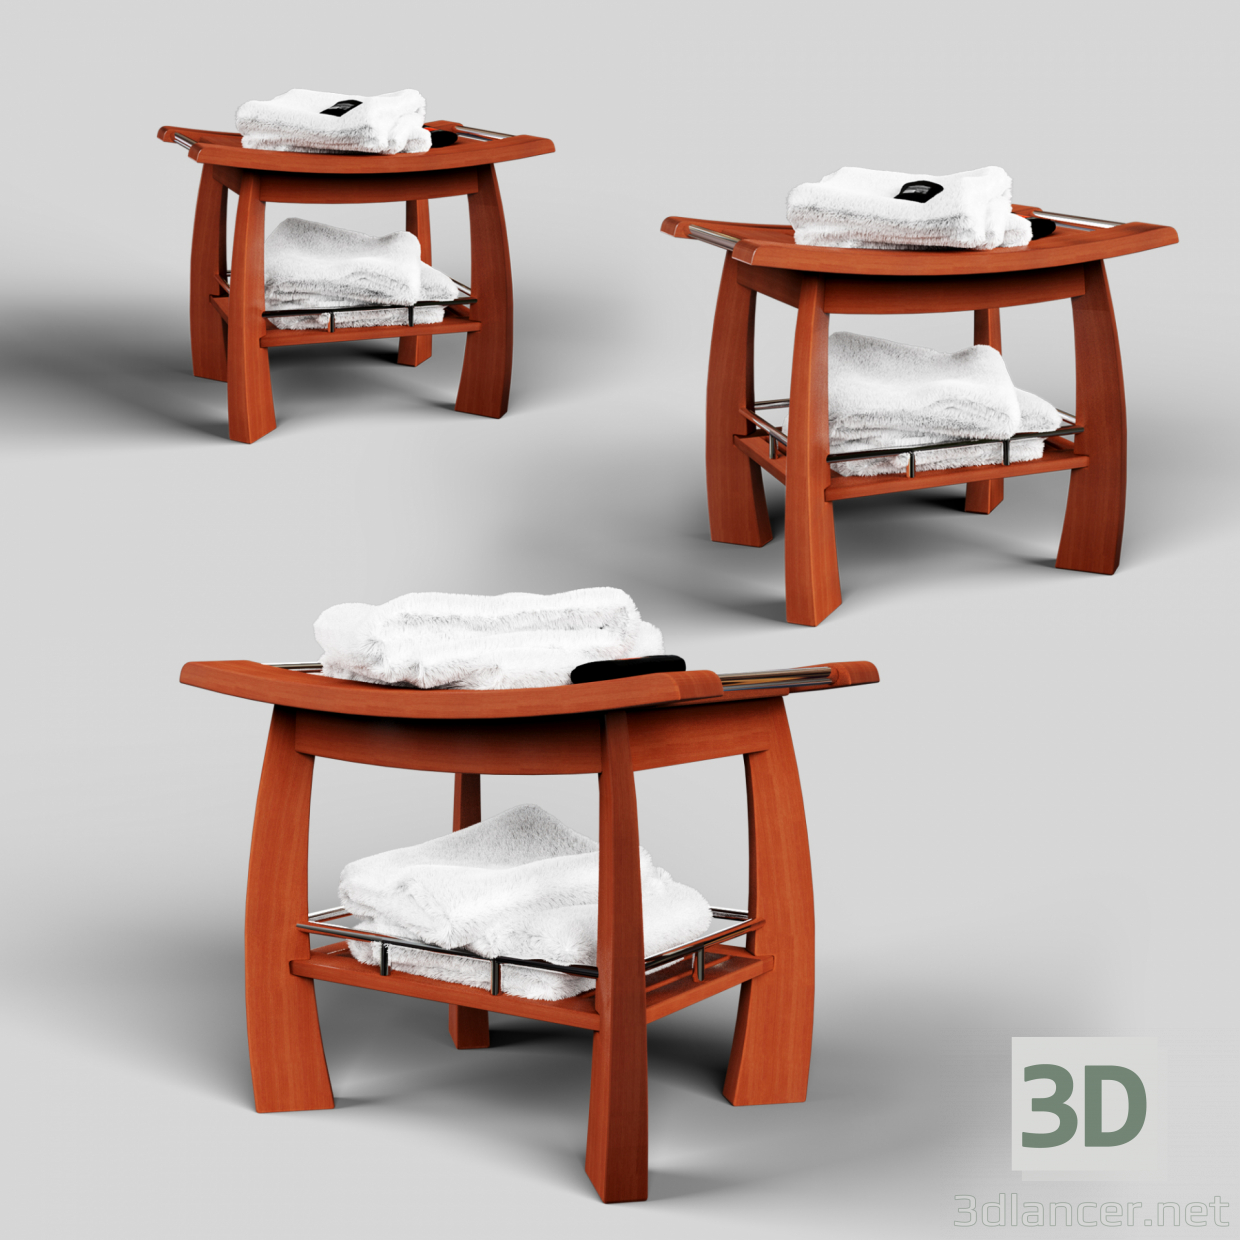 SPA TEAK DUSCHBANK MIT REGAL 3D-Modell kaufen - Rendern